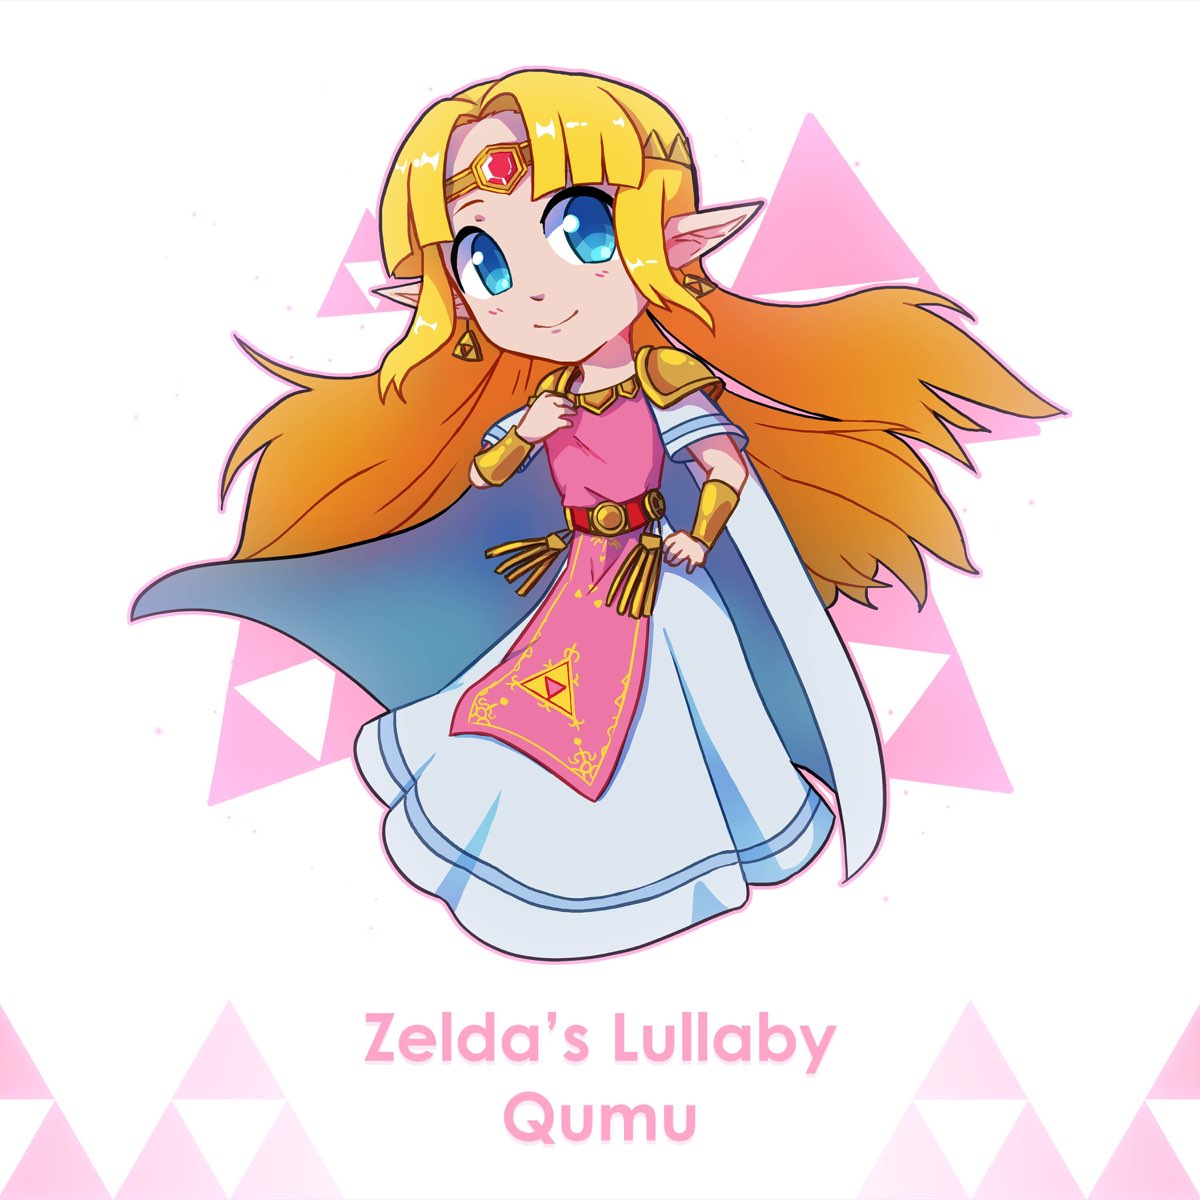 Zelda's Lullaby (The Legend of Zelda Series)